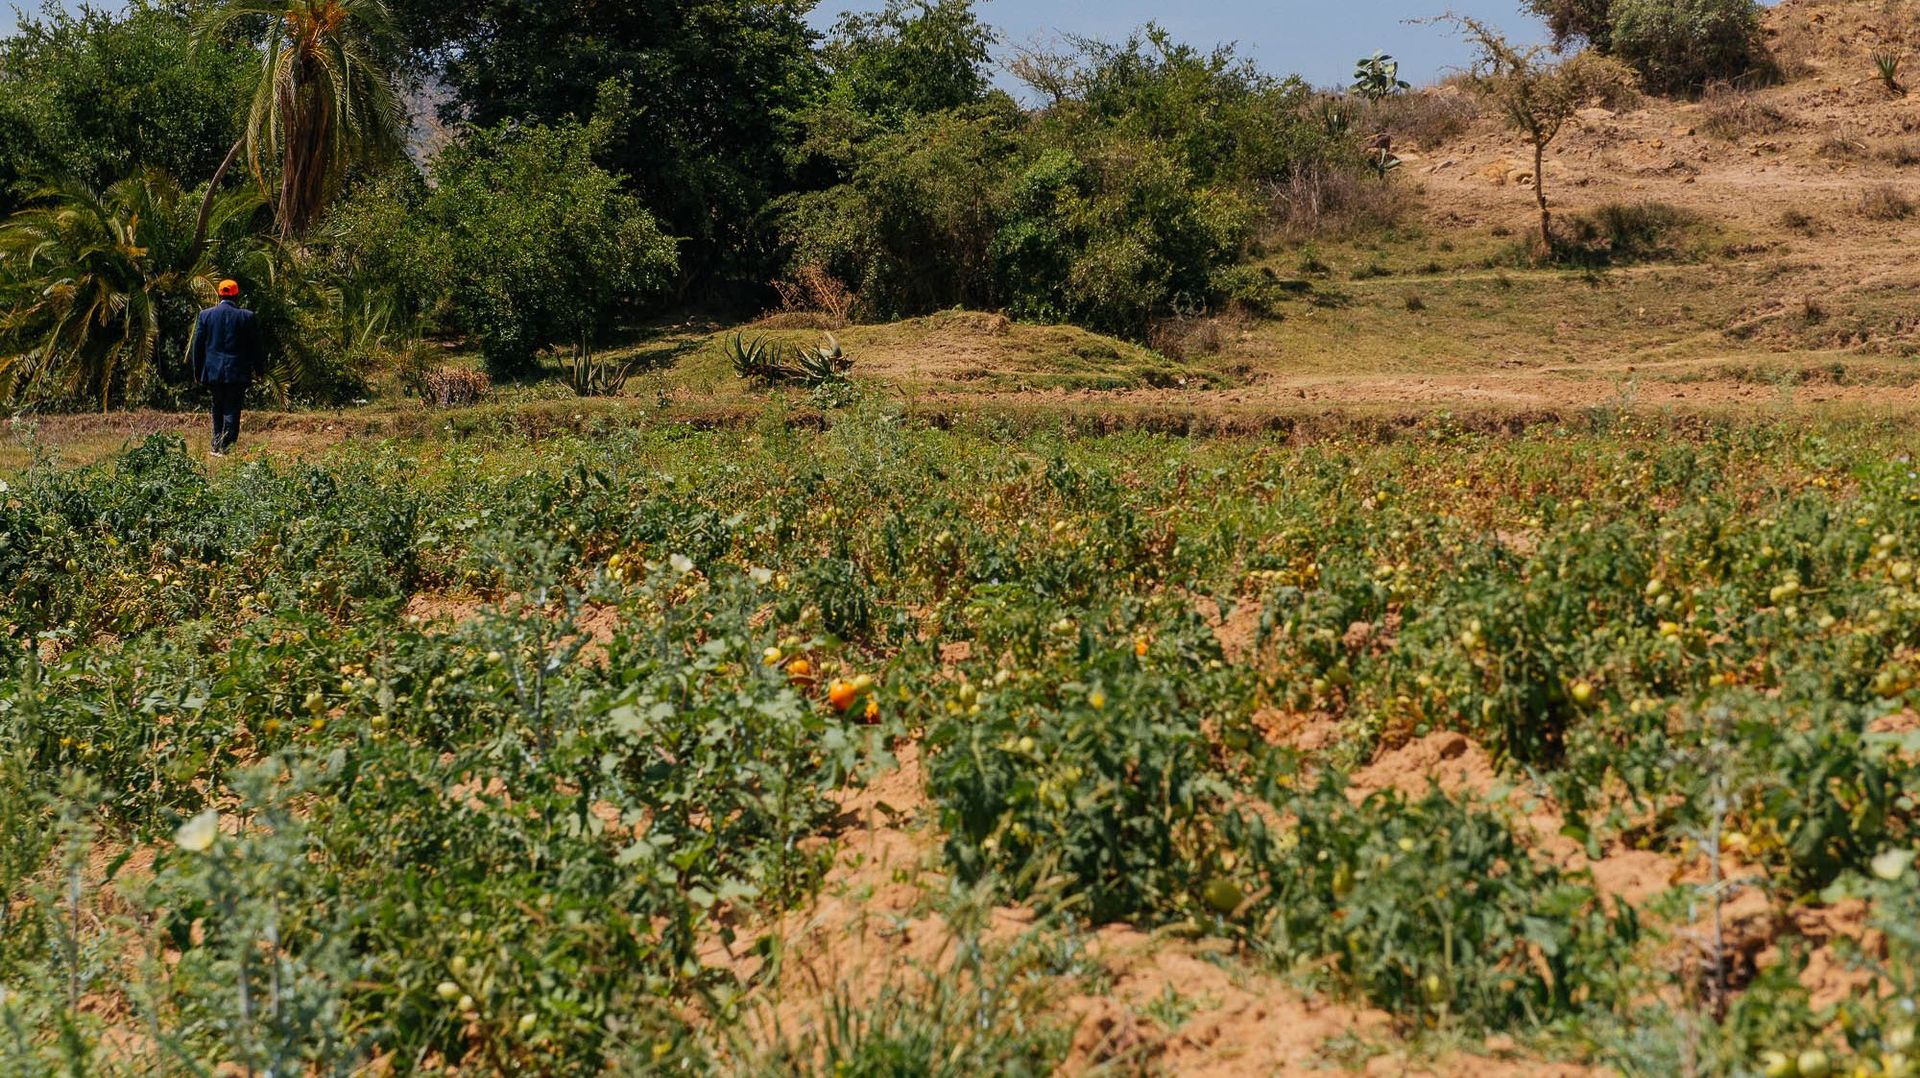 Abrha We Atsbha n'attend pas le retour de la pluie pour cultiver. Les systèmes de conservation d'eau et d'irrigation donnent vie aux champs.  